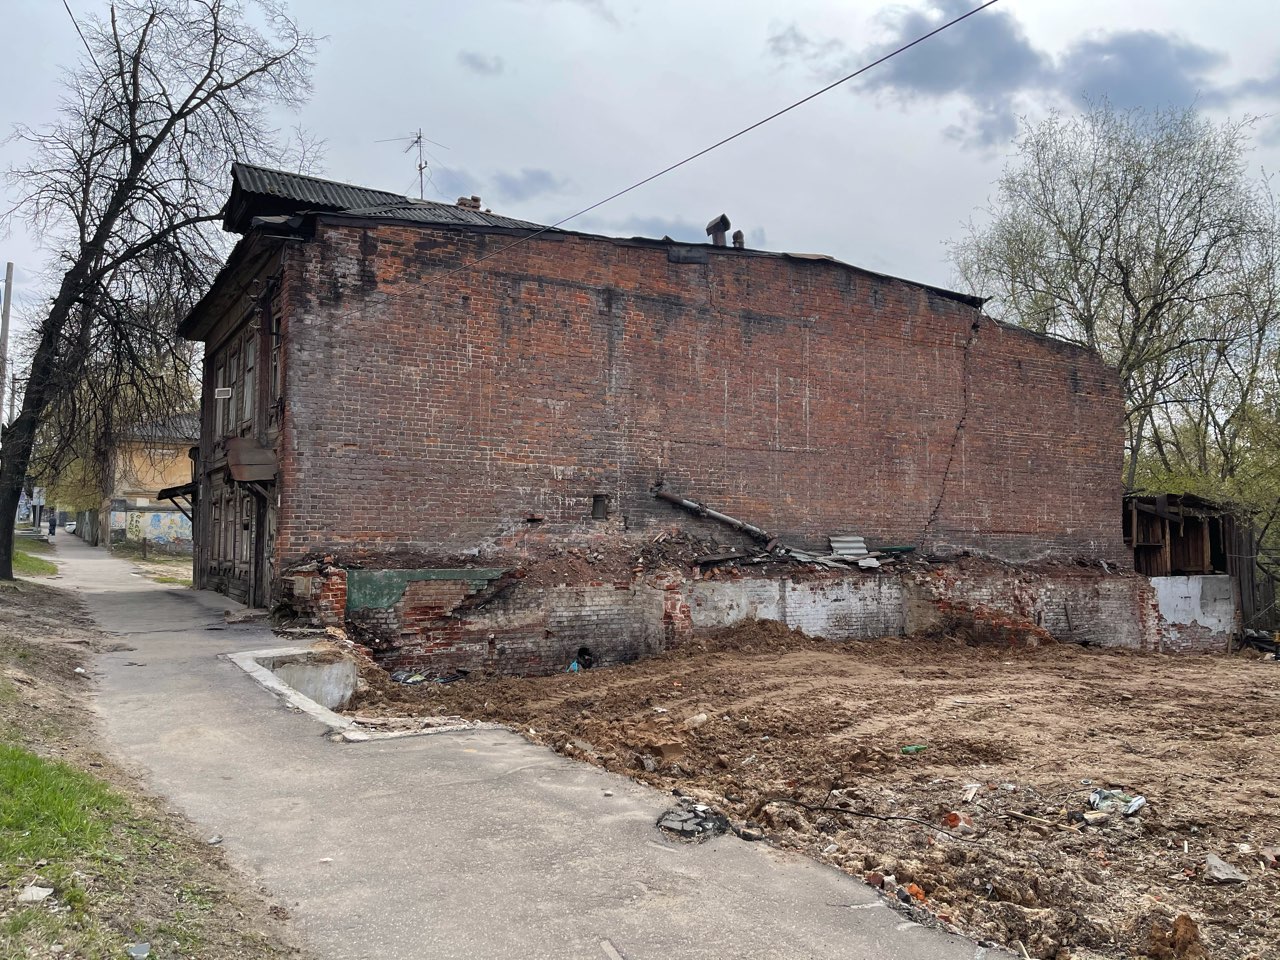 Режим ЧС объявлен из-за авариных домов  в центре Нижнего Новгорода  - фото 1